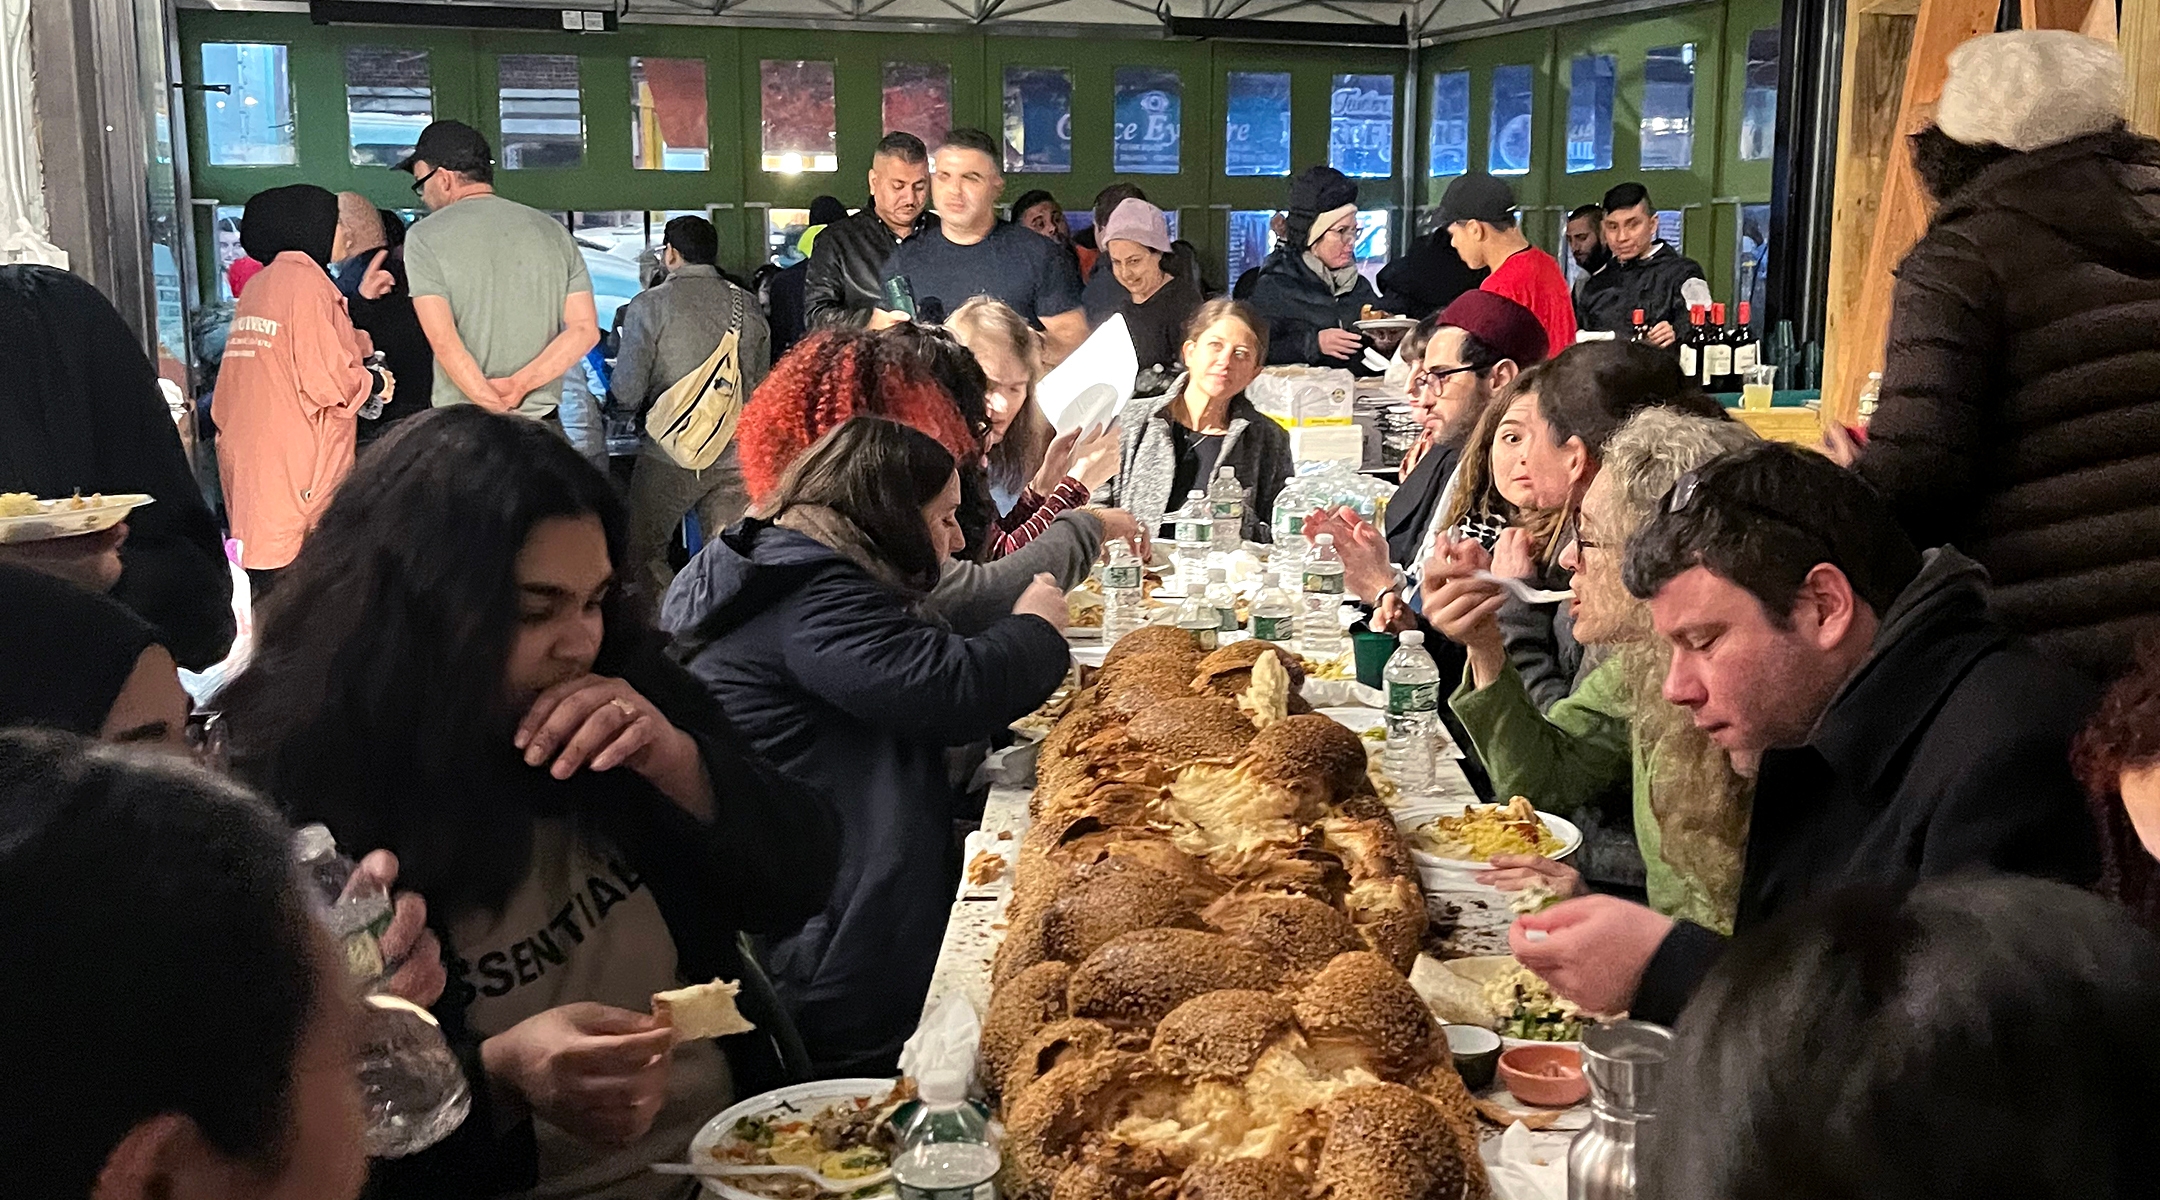 יותר מ-1,300 משתתפים בארוחת שבת חינם באייט, מסעדה פלסטינית בברוקלין